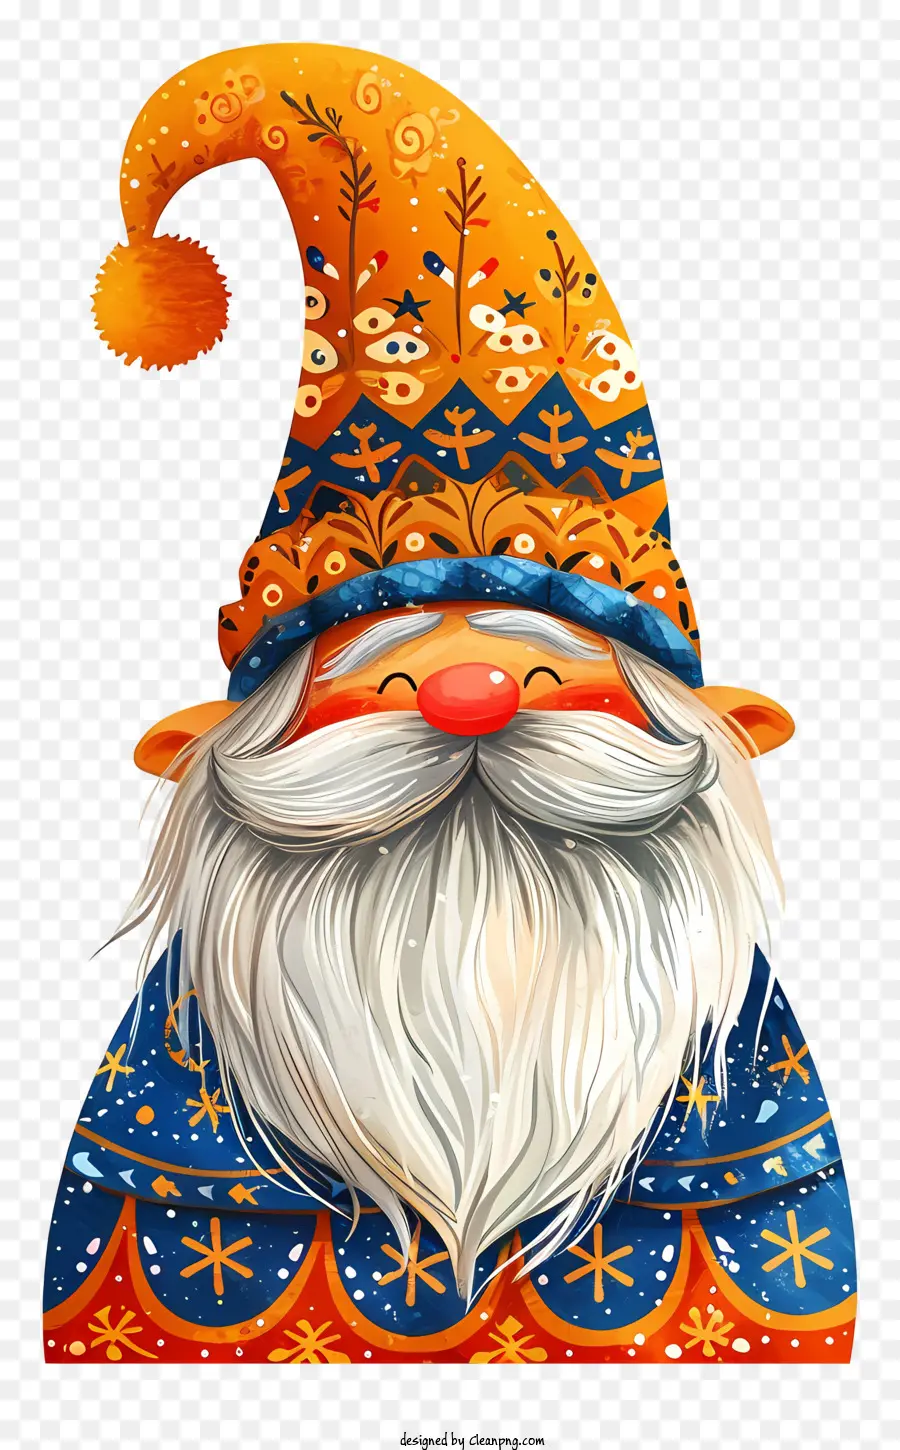 Chính thống năm mới mỉm cười gnome màu xanh và trắng mũ sọc màu đỏ - Gnome mỉm cười trong trang phục đầy màu sắc trên nền bông tuyết